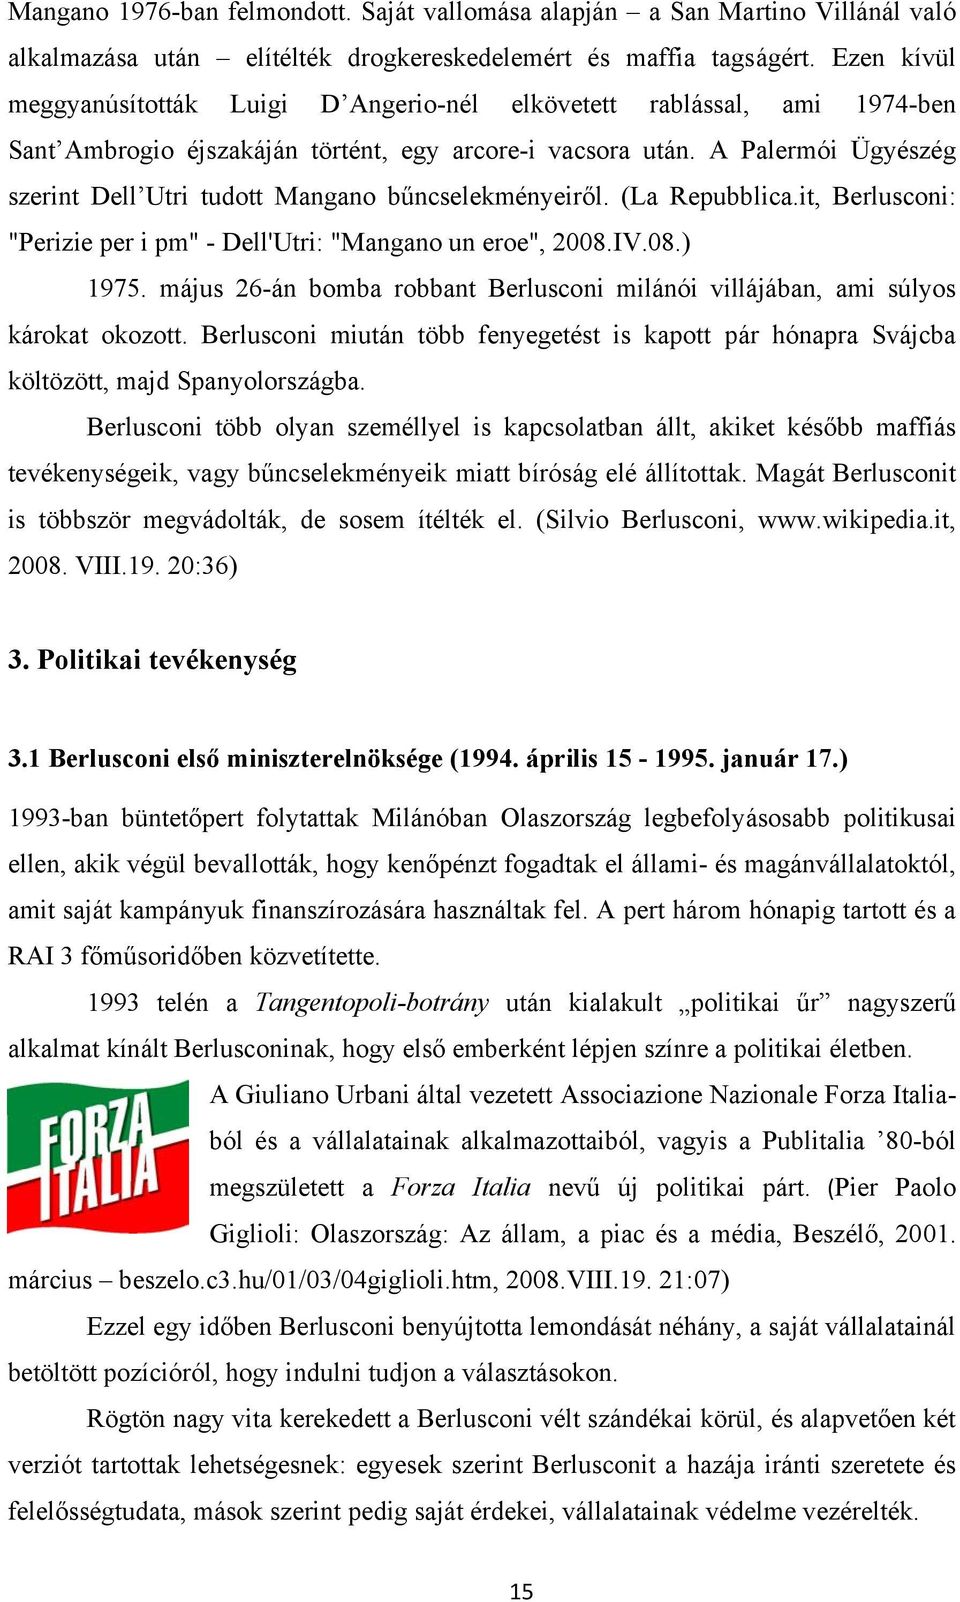 A Palermói Ügyészég szerint Dell Utri tudott Mangano bűncselekményeiről. (La Repubblica.it, Berlusconi: "Perizie per i pm" - Dell'Utri: "Mangano un eroe", 2008.IV.08.) 1975.